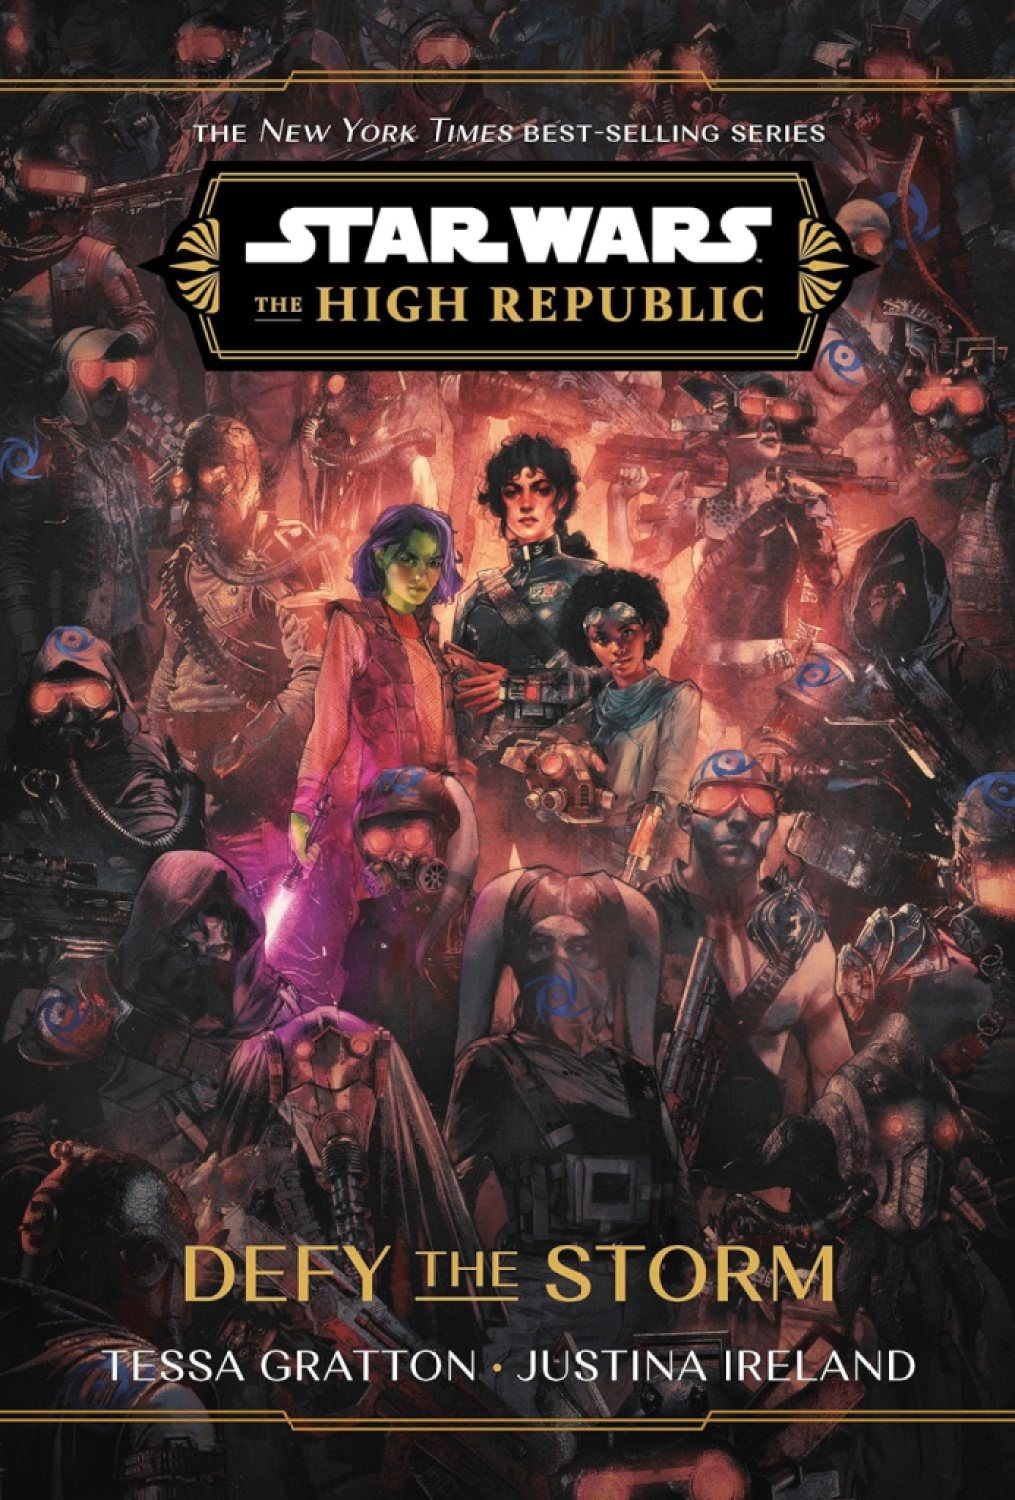 La couverture Defy the Storm.  Cette image fait partie d'un article sur l'ordre de lecture de tous les livres Star Wars : The High Republic. 